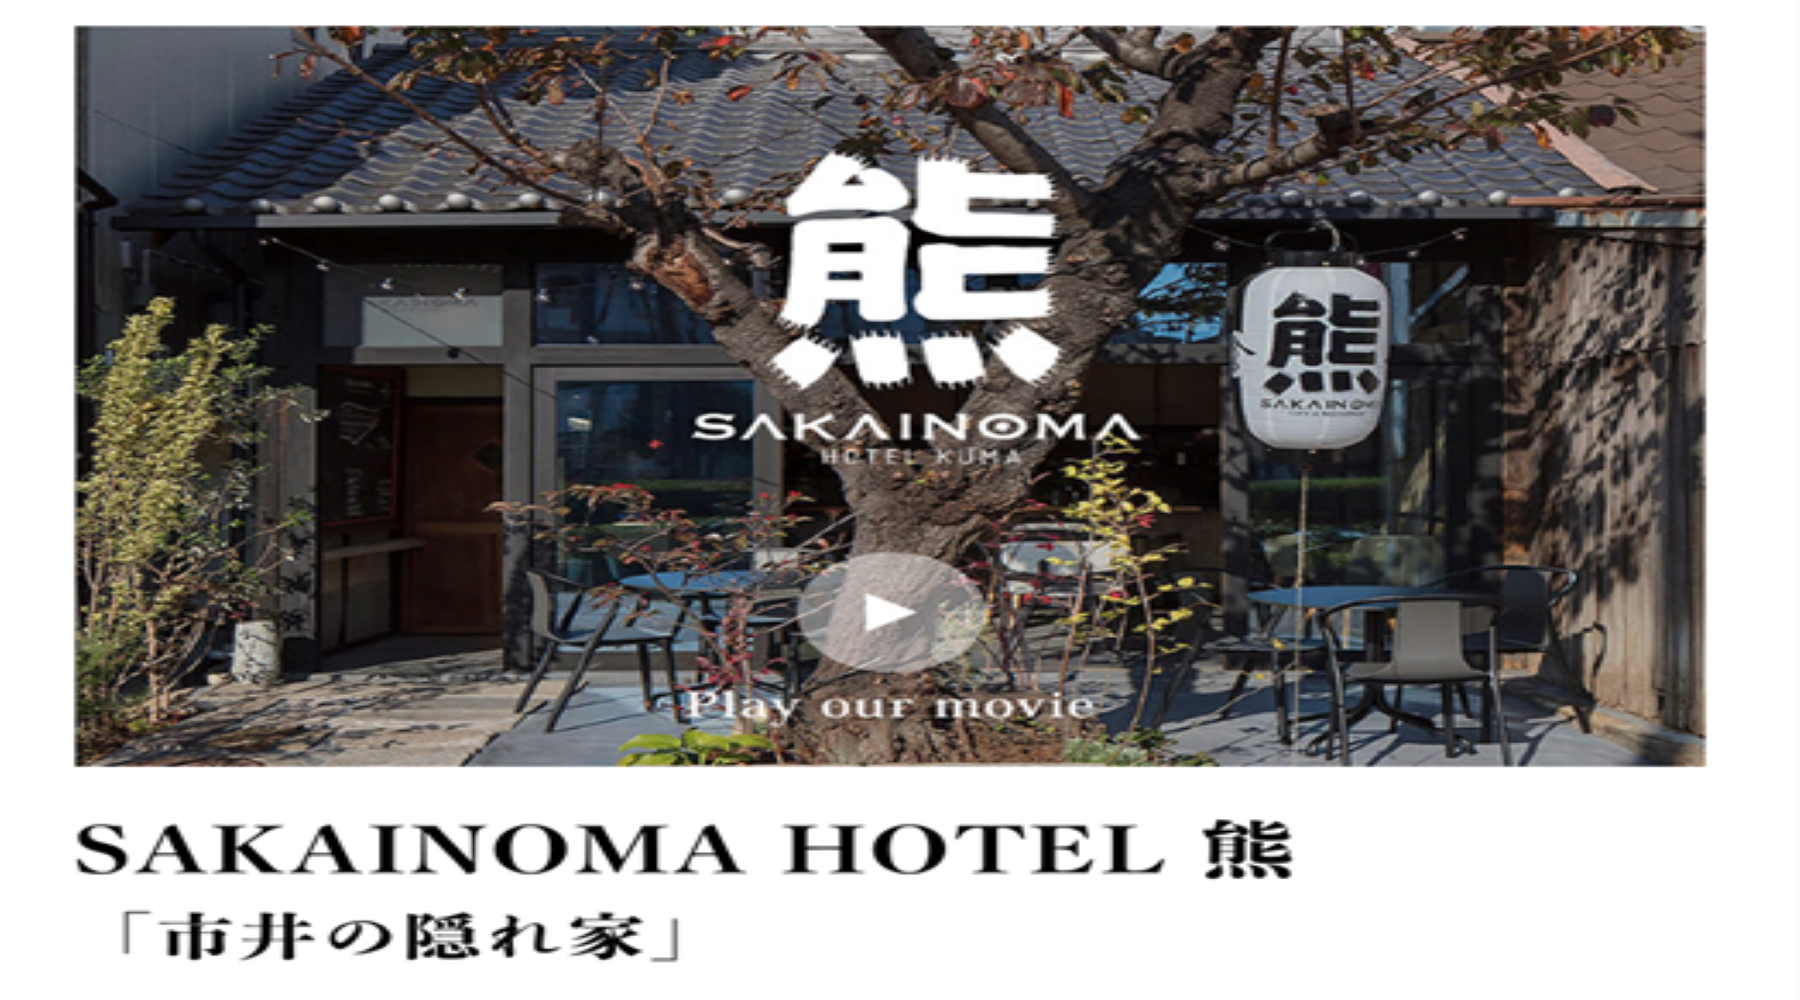 SAKAINOMA HOTEL熊のサムネイル画像